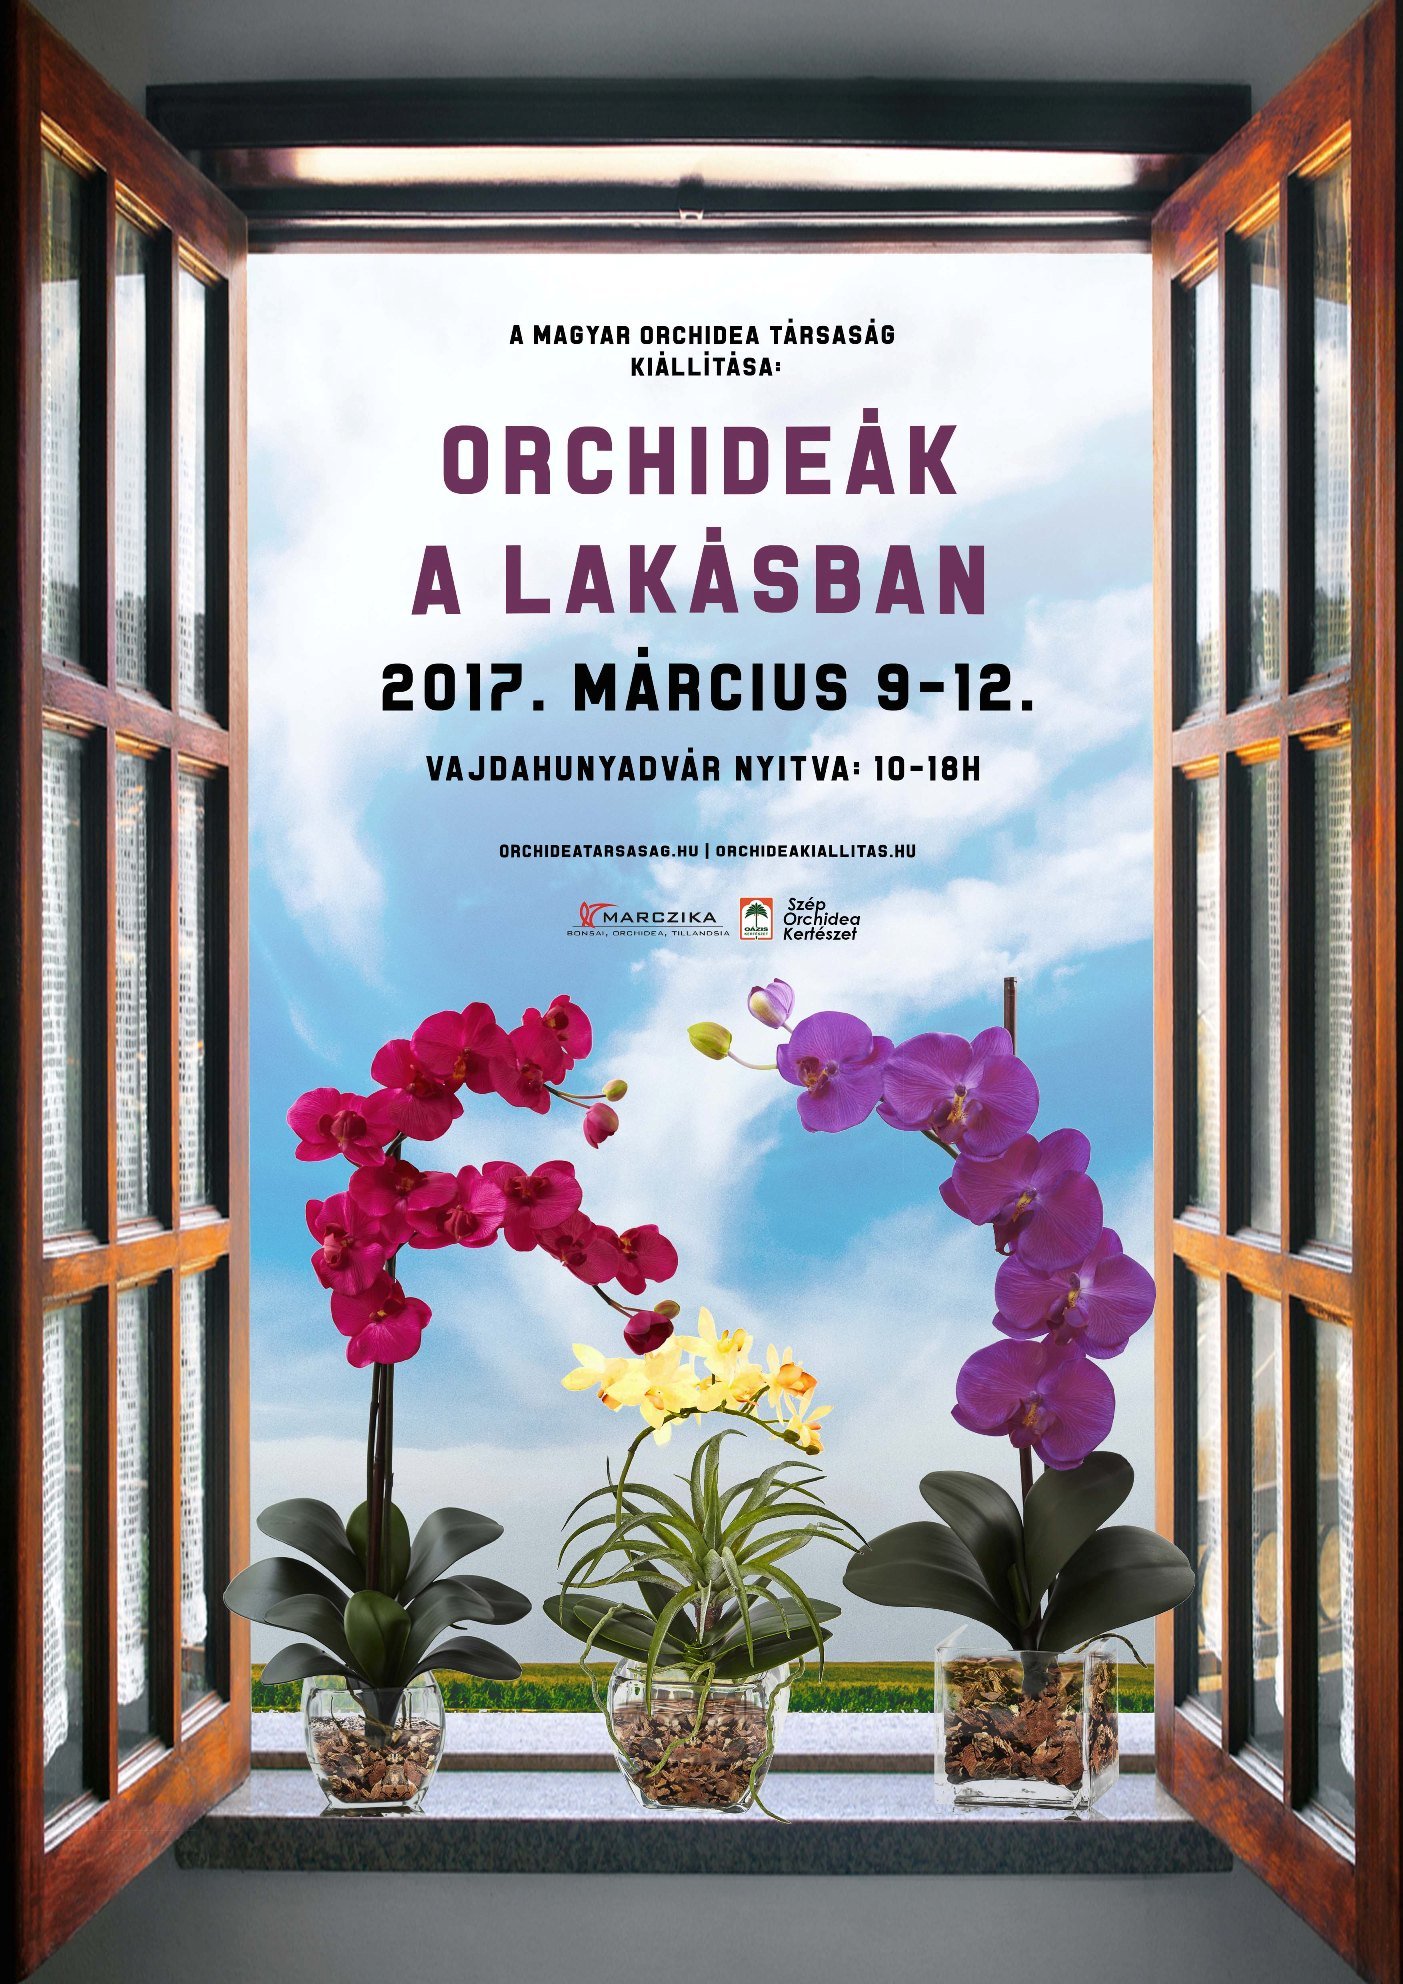 2017 tavaszi orchidea kiállítás kis plakátja